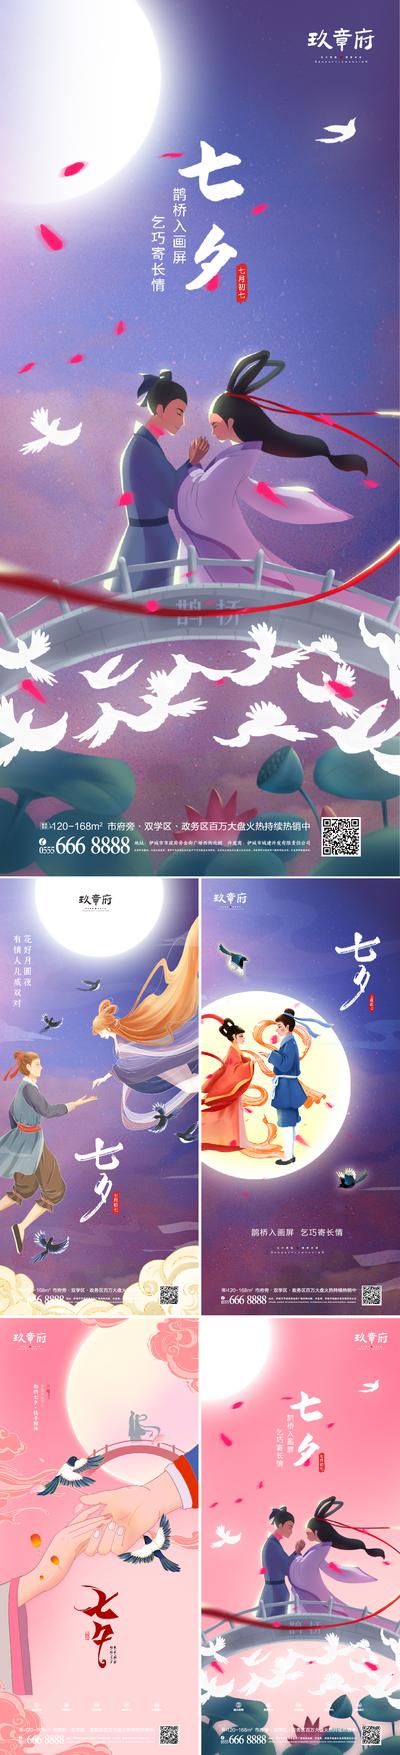 南门网 海报 中国传统节日 房地产 七夕节 情人节 鹊桥 牛郎织女 系列